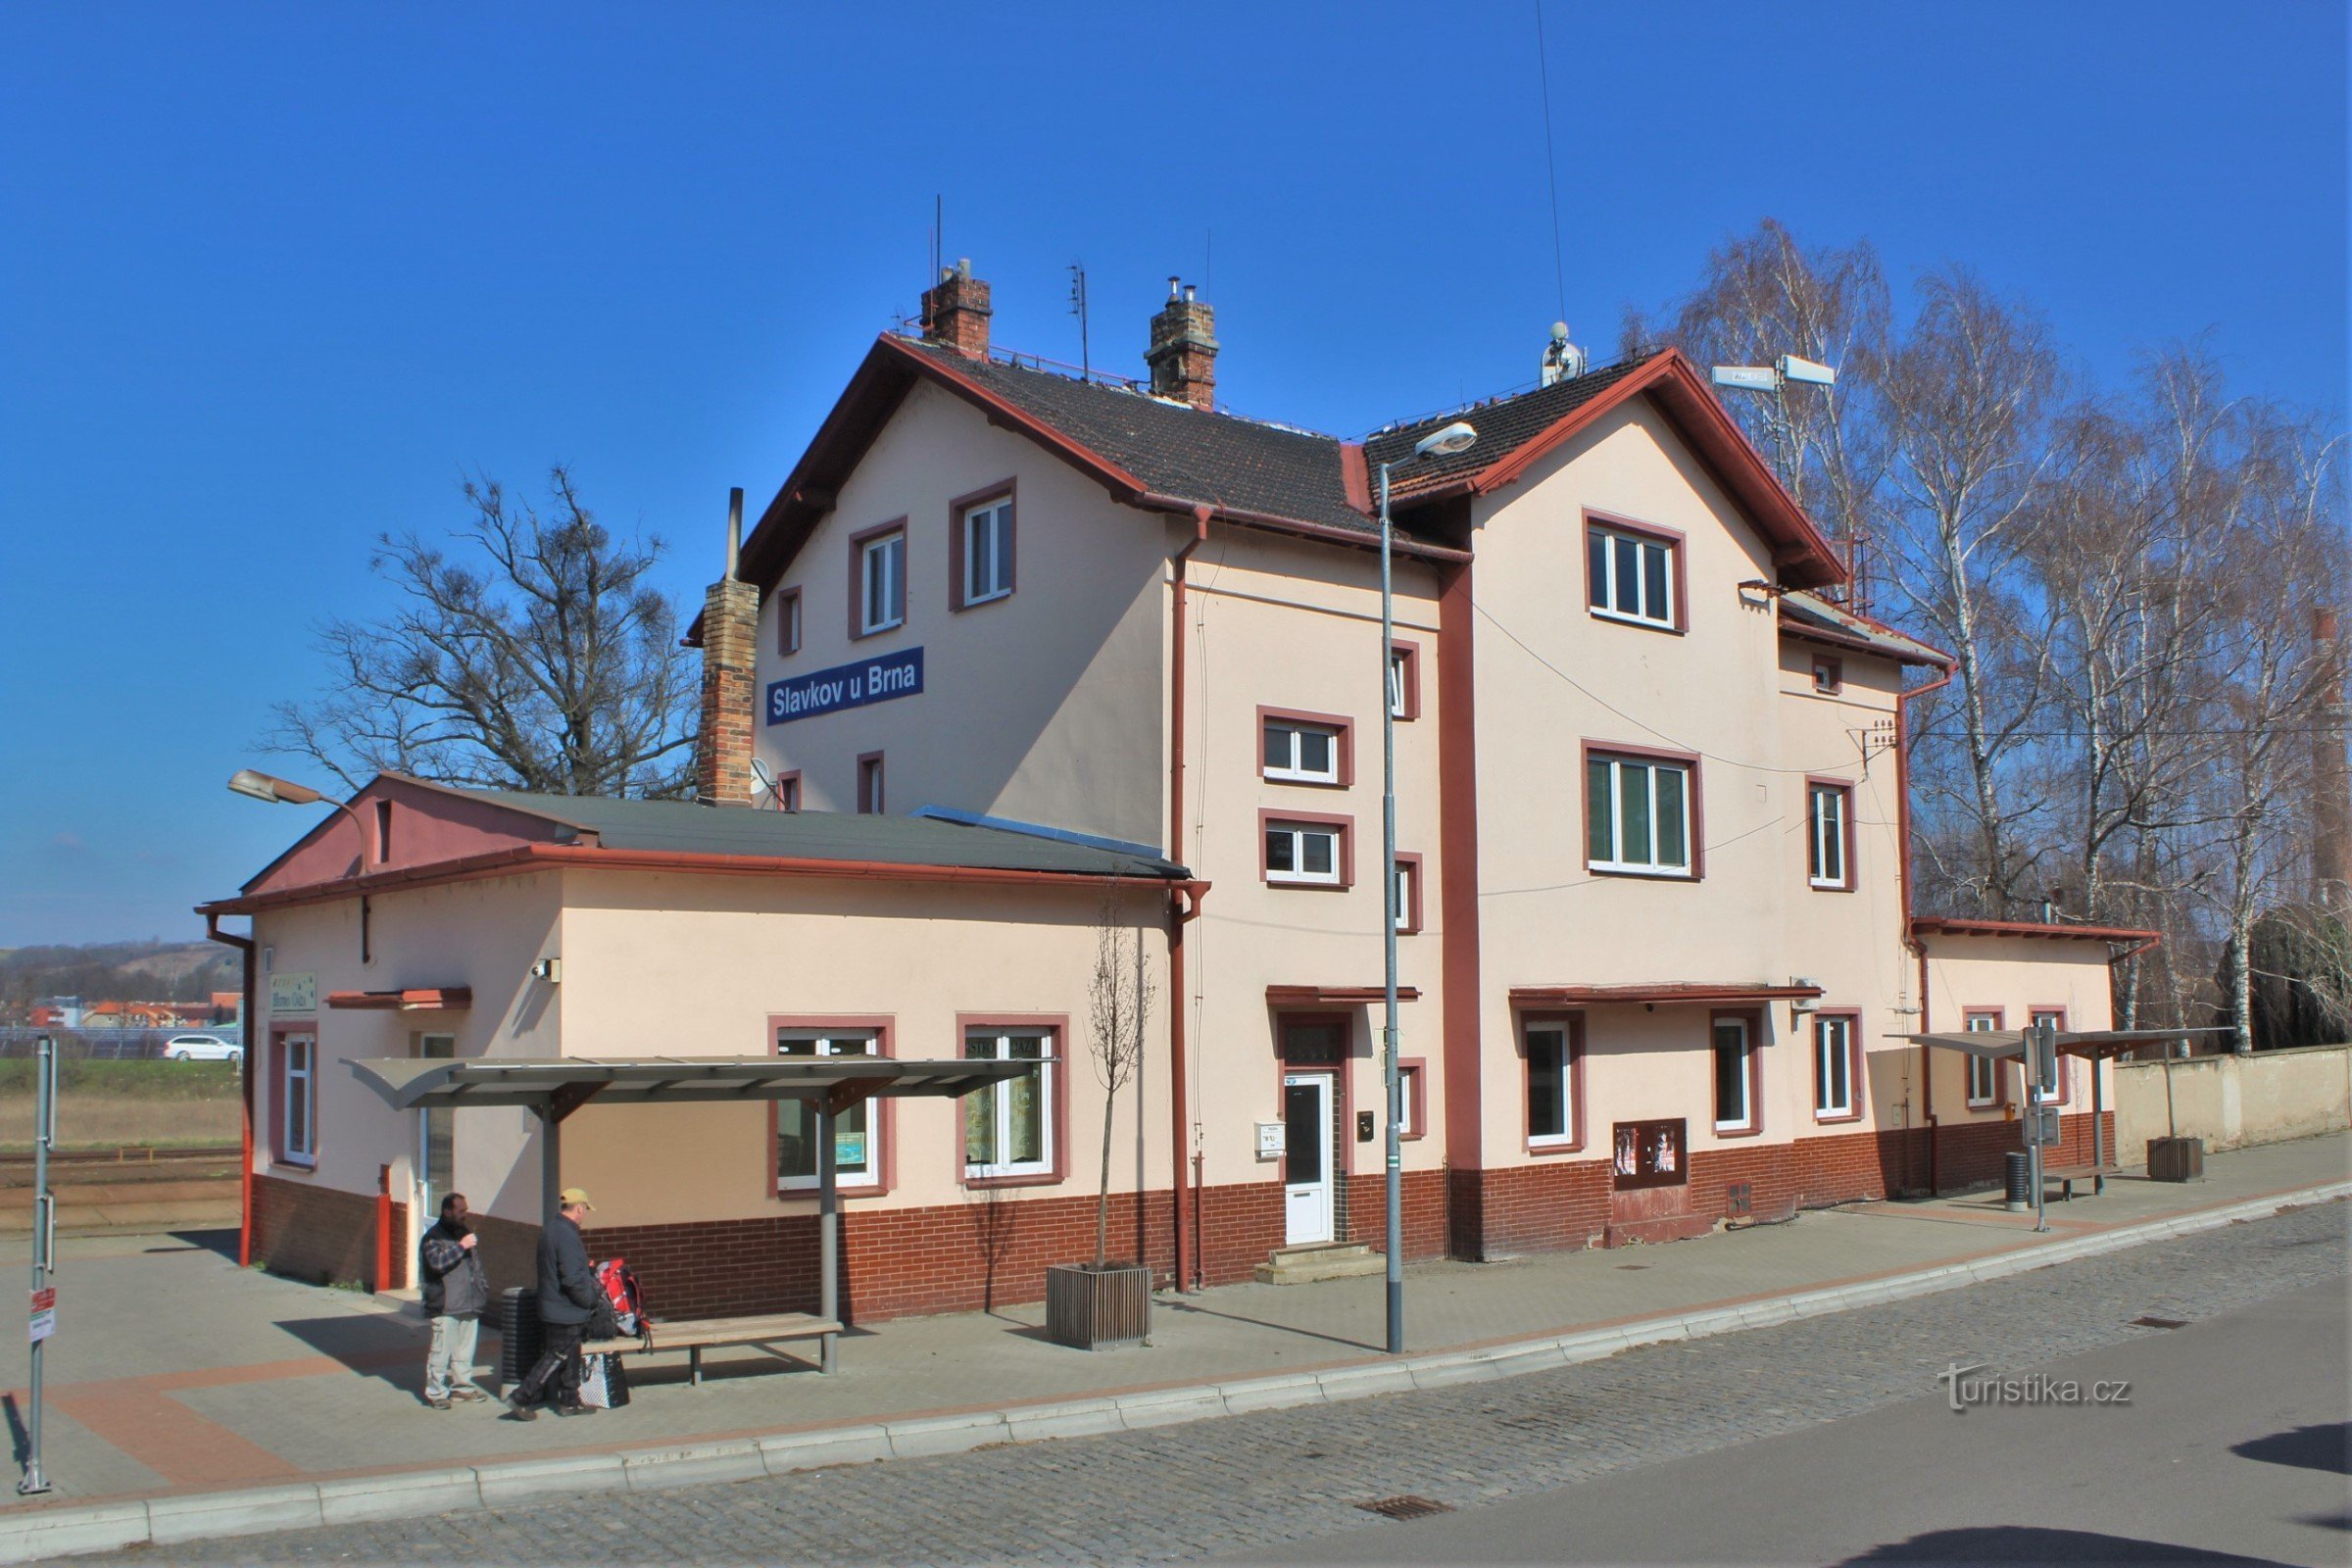 Prédio da estação em Slavkov perto de Brno